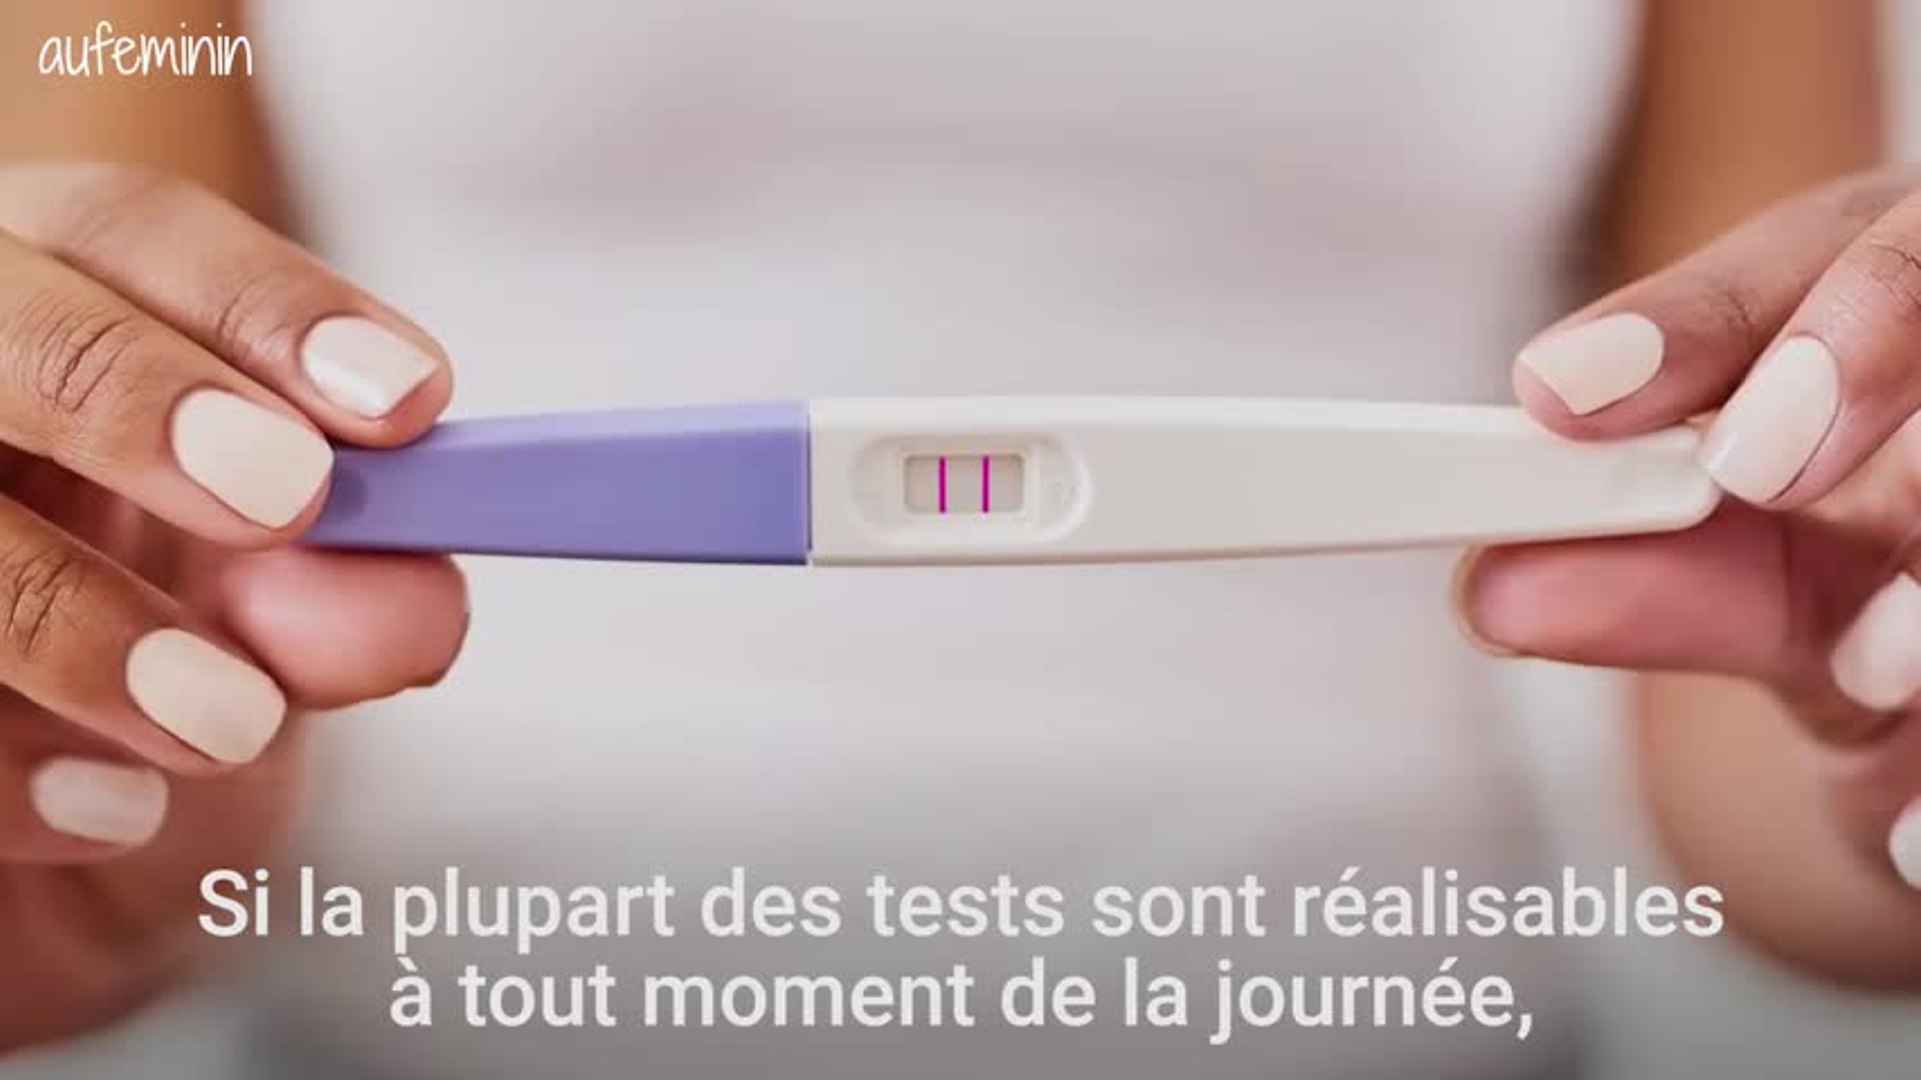 Quand et comment utiliser un test de grossesse - Vidéo Dailymotion